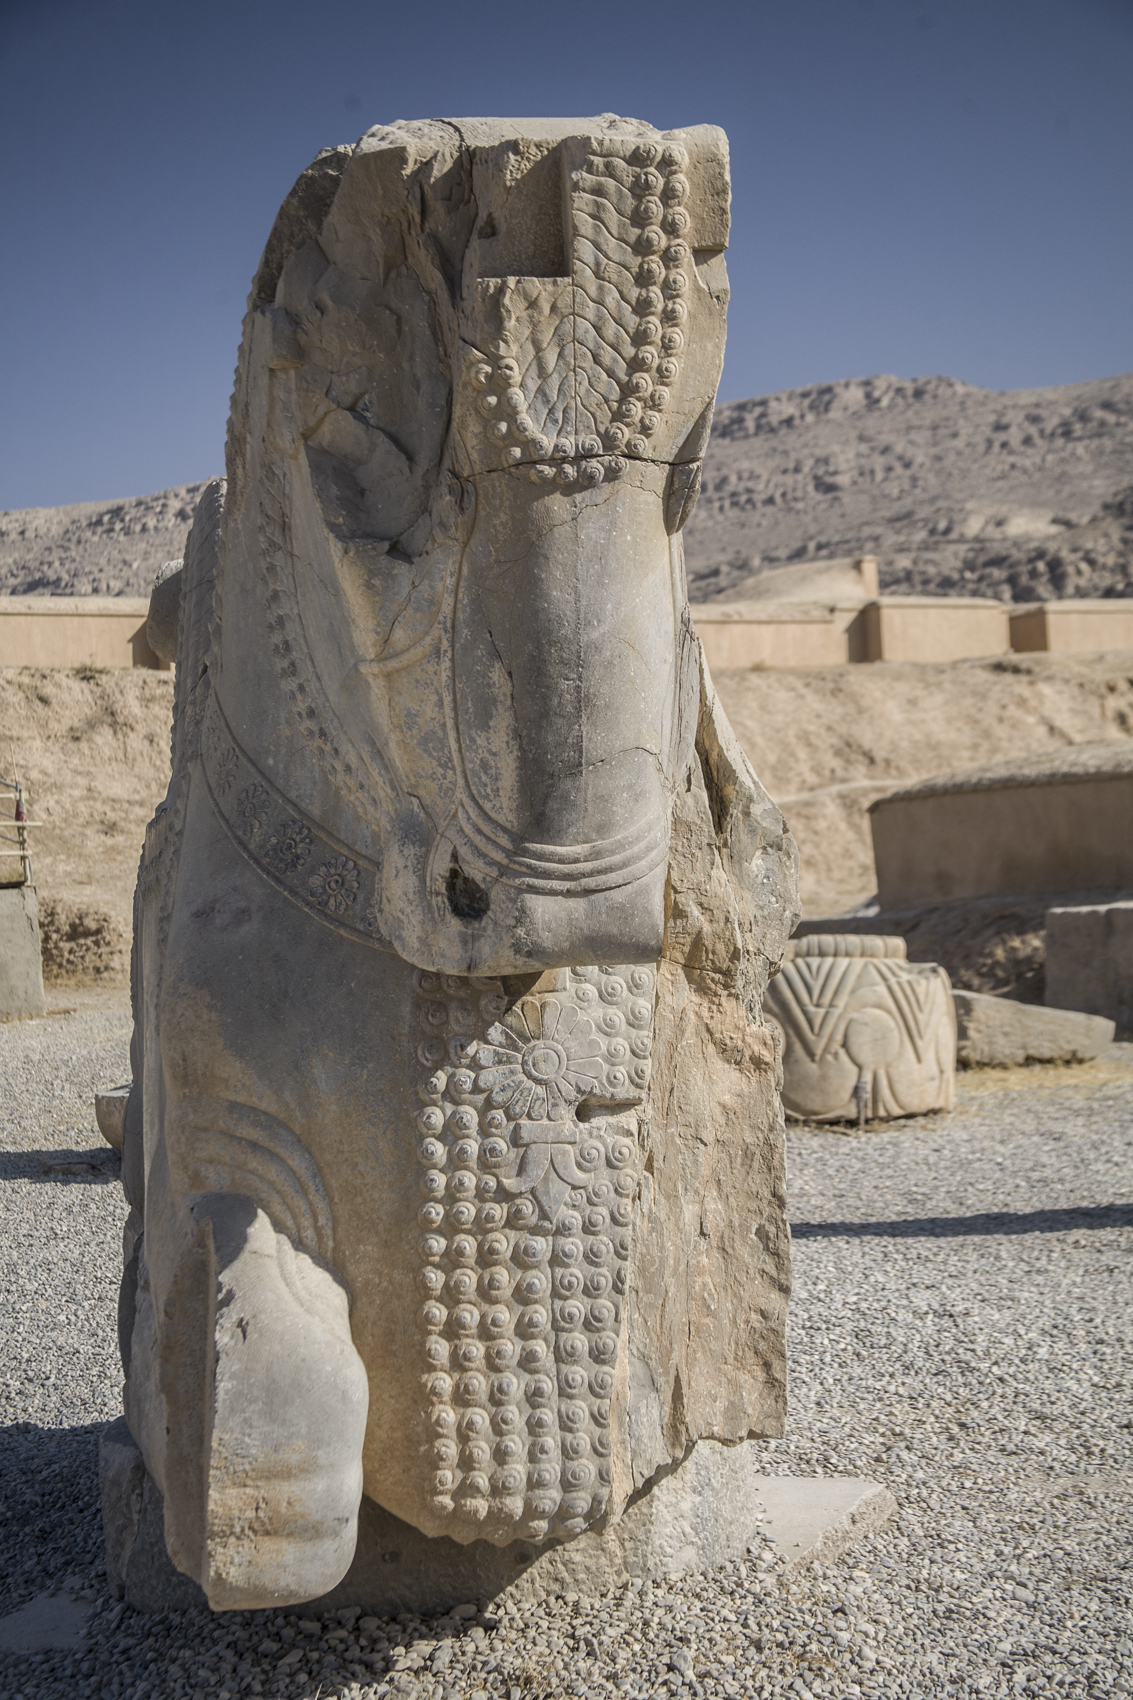 Persopolis, 500 BC